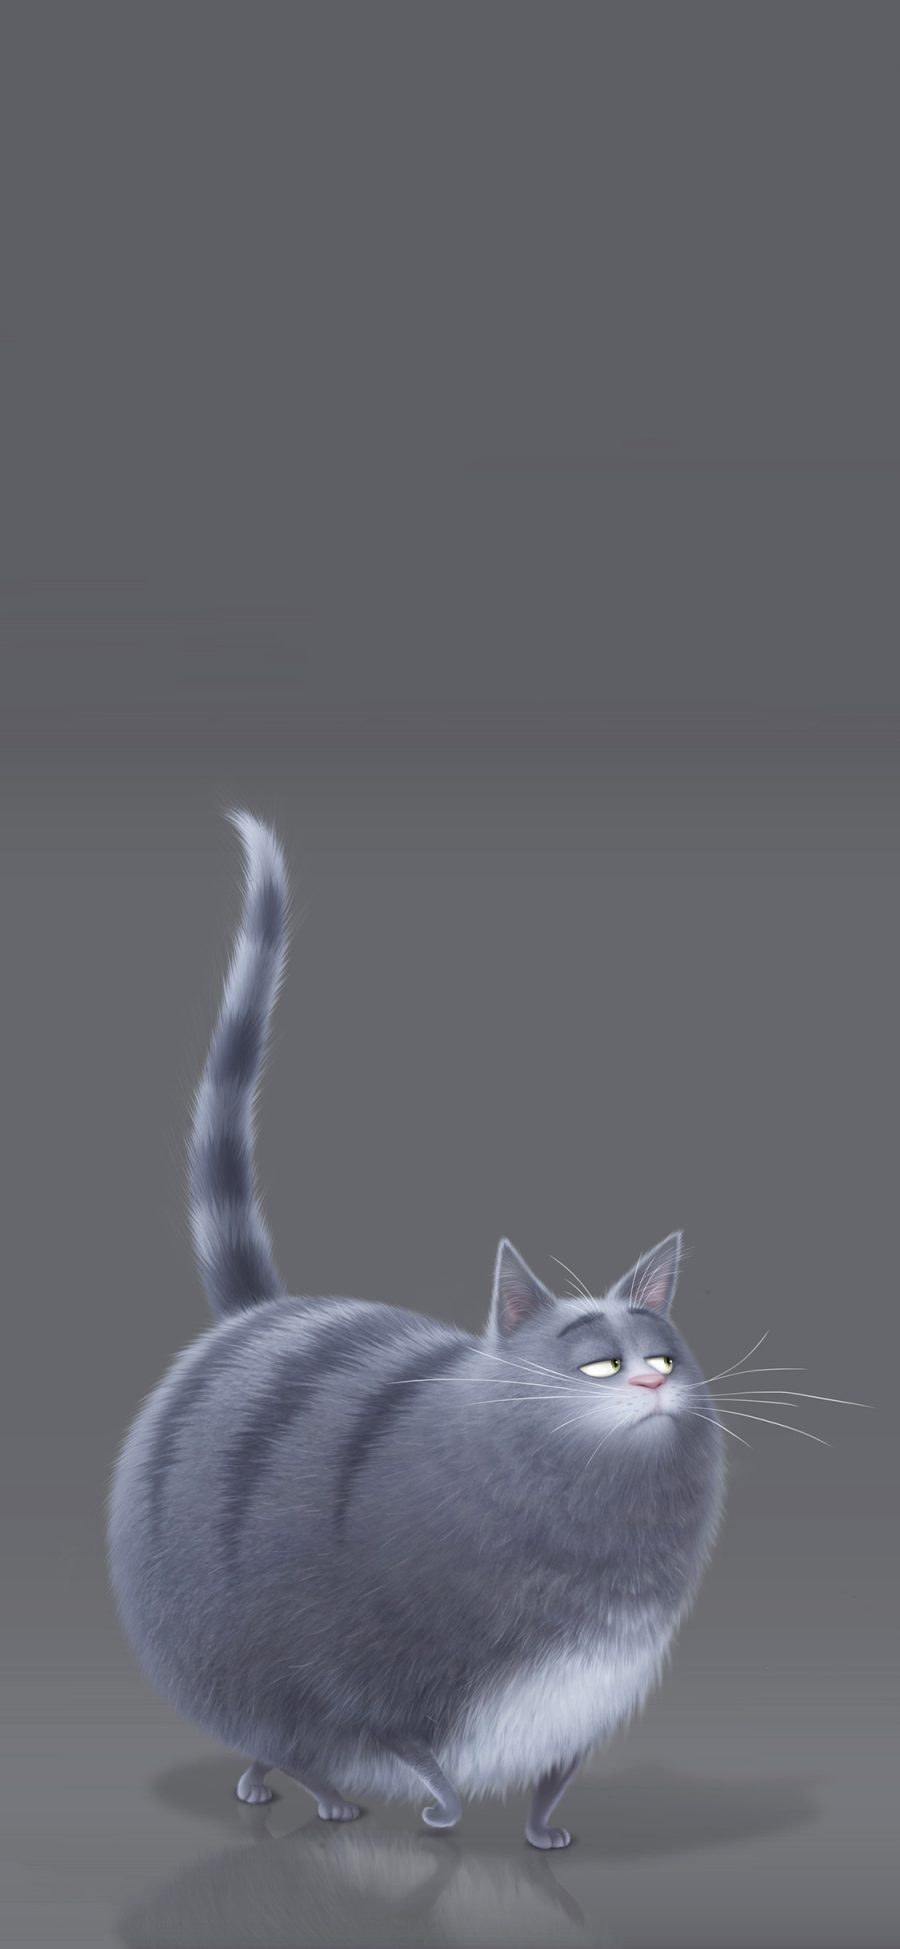 [2436×1125]美国 动画 爱宠大机密 冰冰 虎斑猫 苹果手机动漫壁纸图片